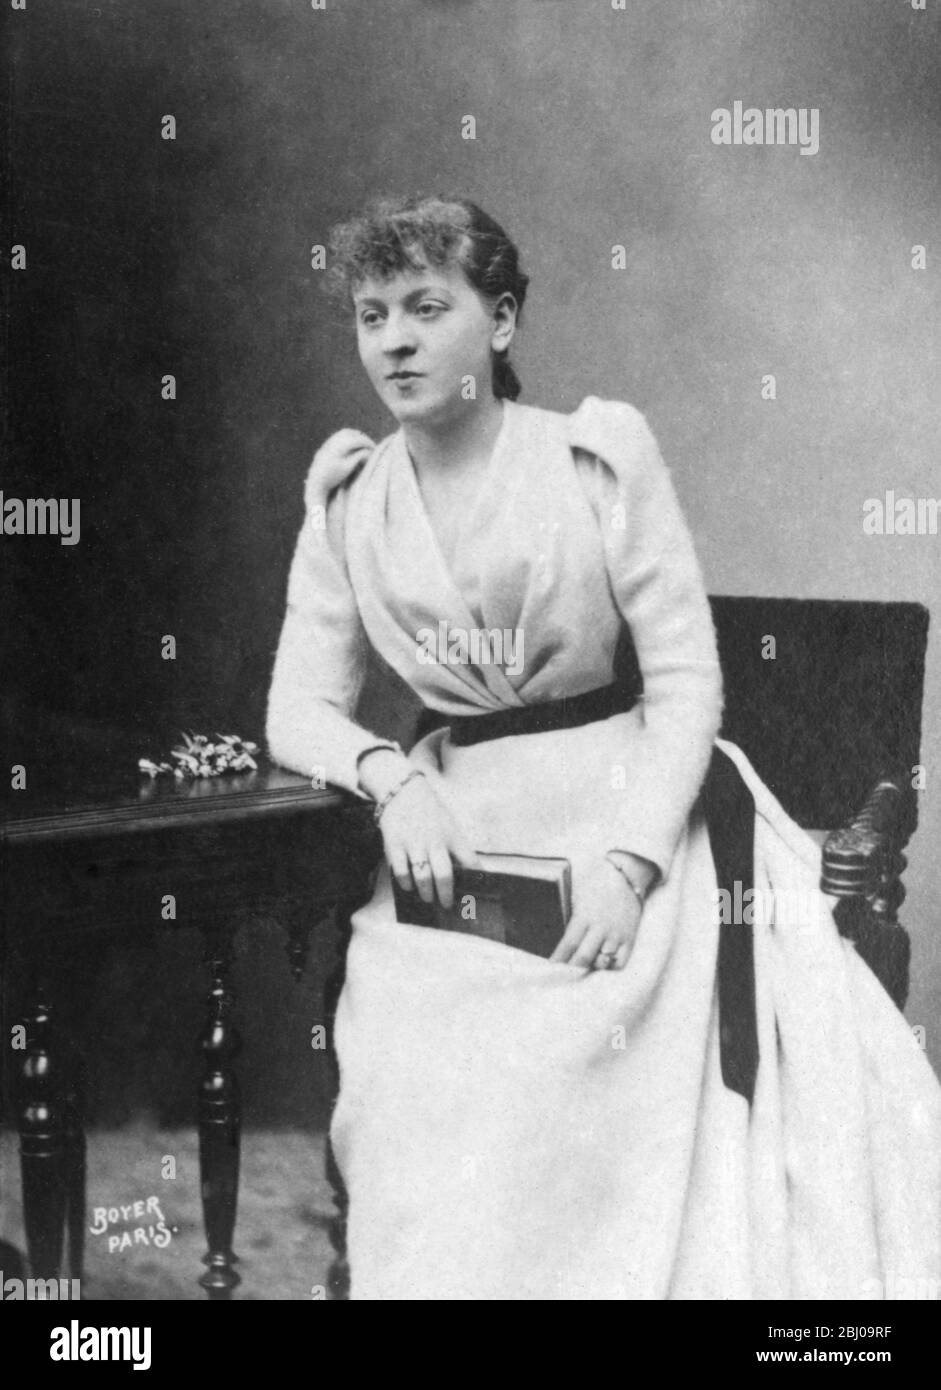 Suzanne Reichenberg (1853-1924), französische Schauspielerin, debütierte 1868 in der Rolle der Agnes an der Ecole des femmes an der Comedie-Francaise. Von 1870 bis 1900 war sie Königin der Theatergenusse. Das Dessert Crepe Suzette wurde zu ihren Ehren benannt. - Stockfoto